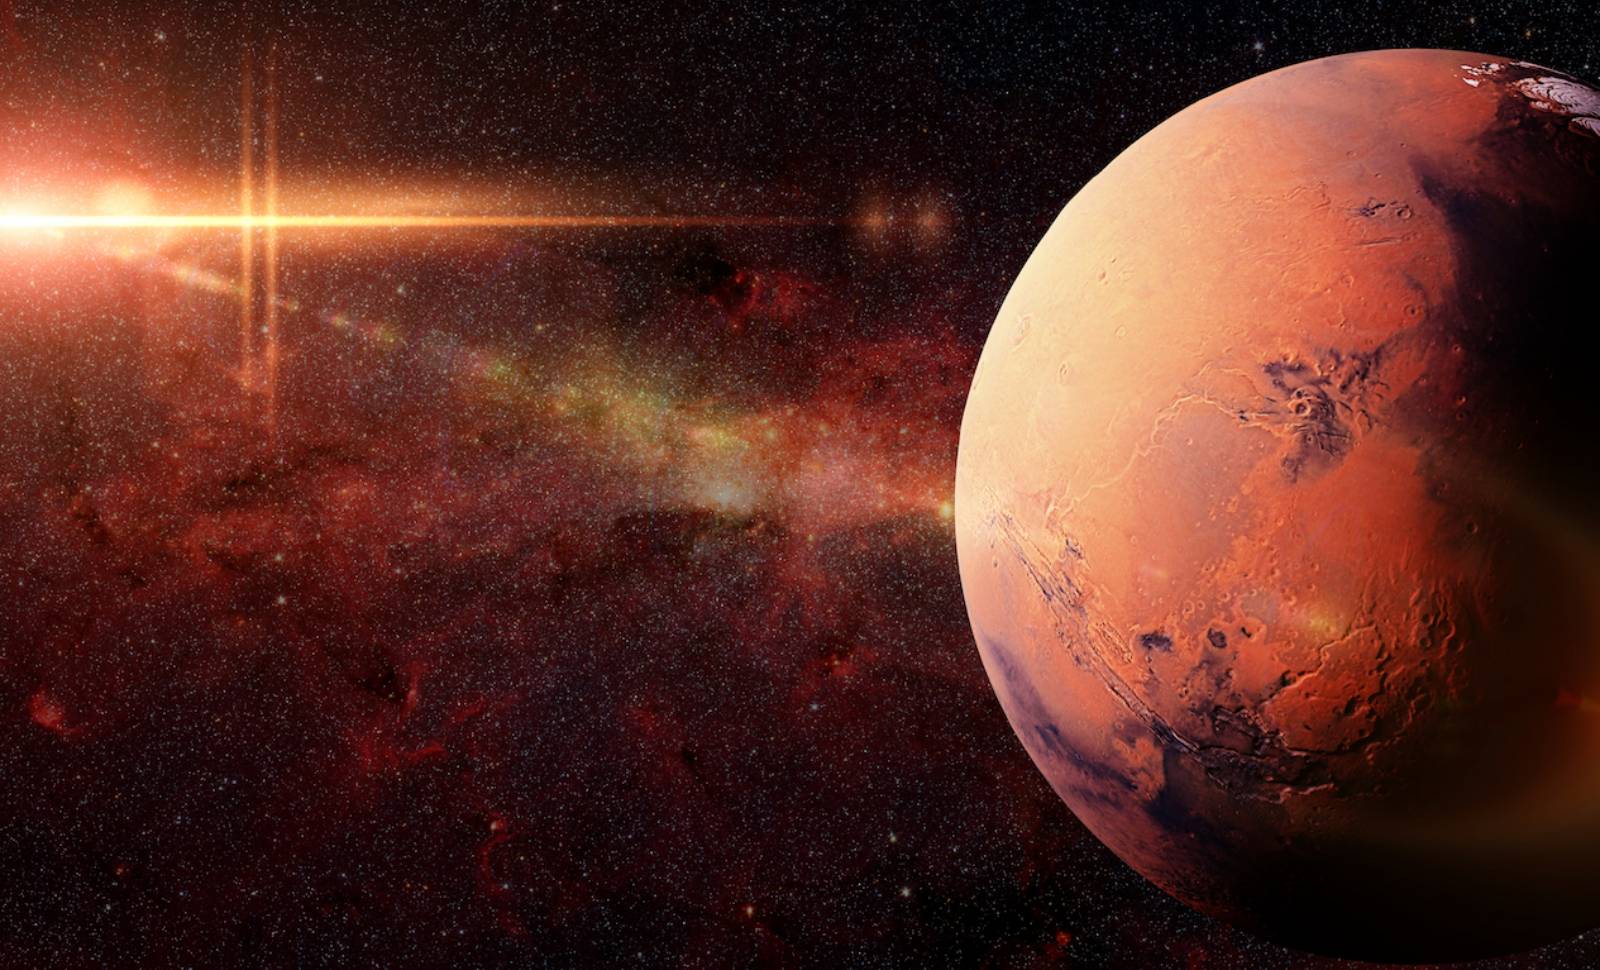 MATKA CHRZESTNA. NIESAMOWITE zdjęcie z Marsa, które ZSZOKOWAŁO Internet